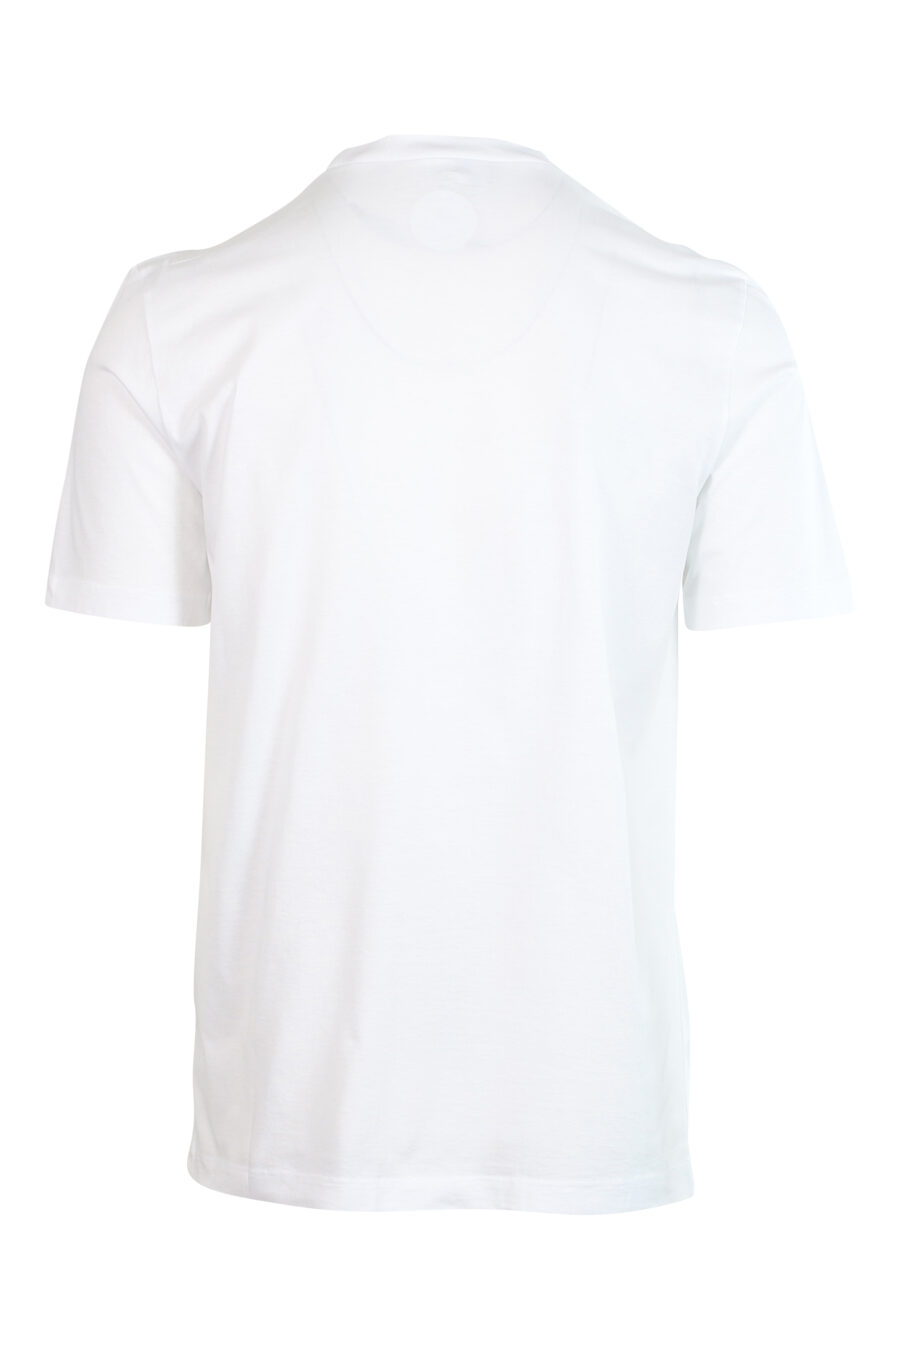 T-shirt branca com minilogo preto "bold" e folha laranja - 8052134990148 2